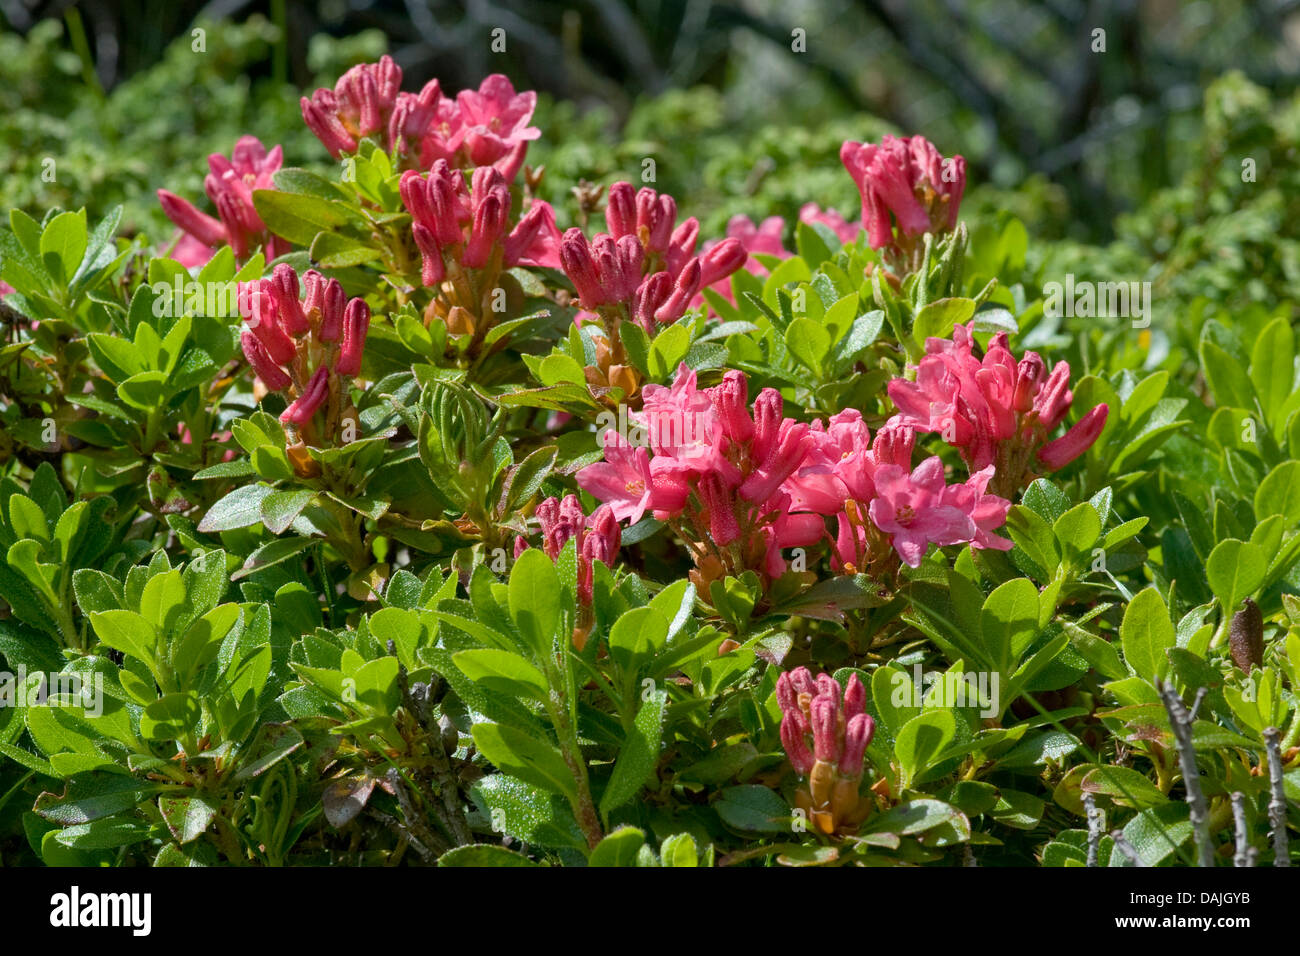 hairy alpine rose (Rhododendron hirsutum), blooming, Switzerland Stock Photo